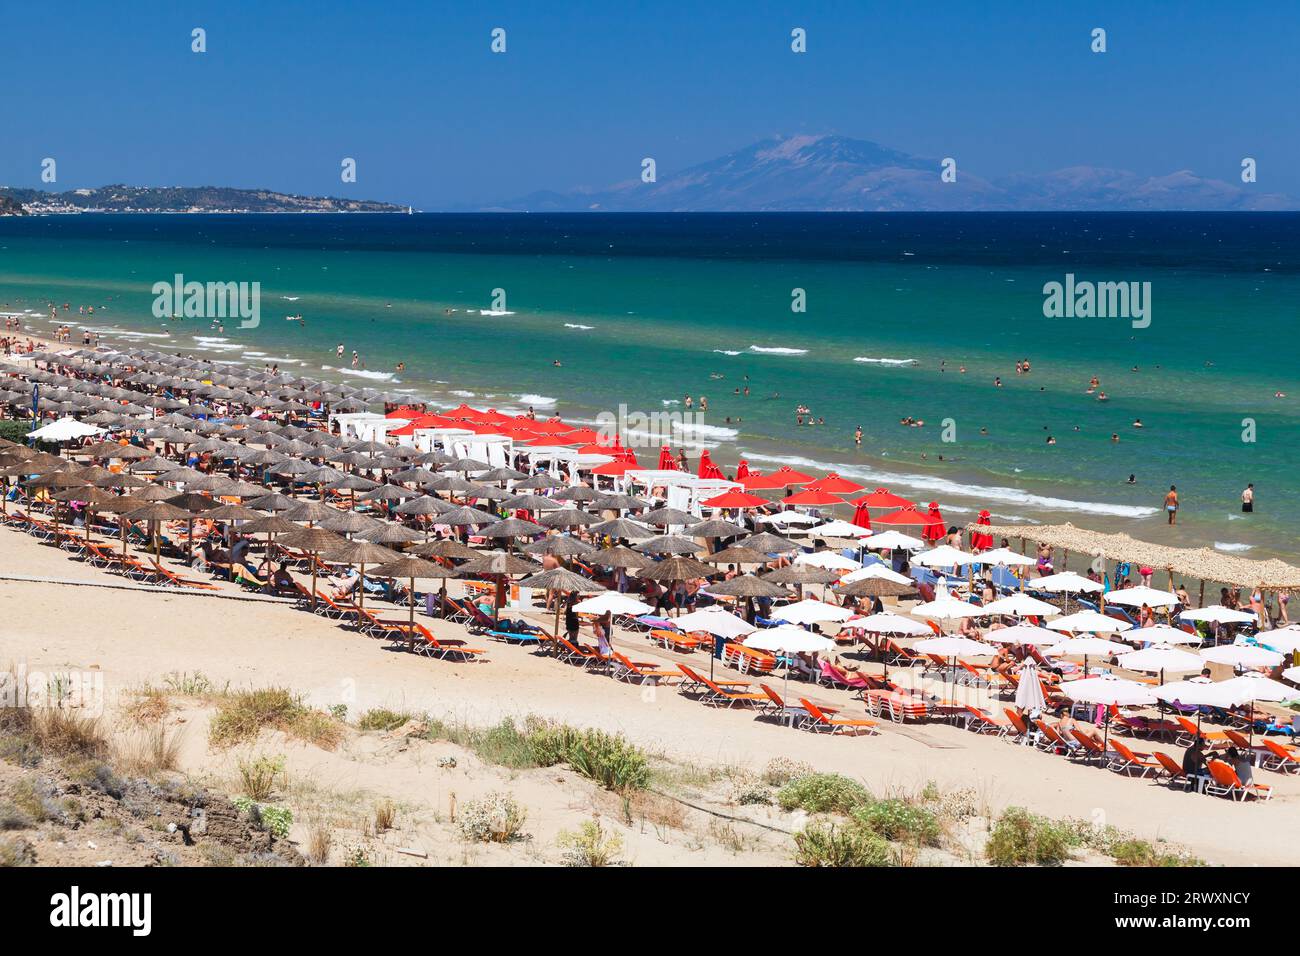 Zakynthos, Griechenland - 15. August 2016: Touristen sind am Banana Beach der griechischen Insel Zakynthos. Küste des Ionischen Meeres an einem sonnigen Sommertag Stockfoto